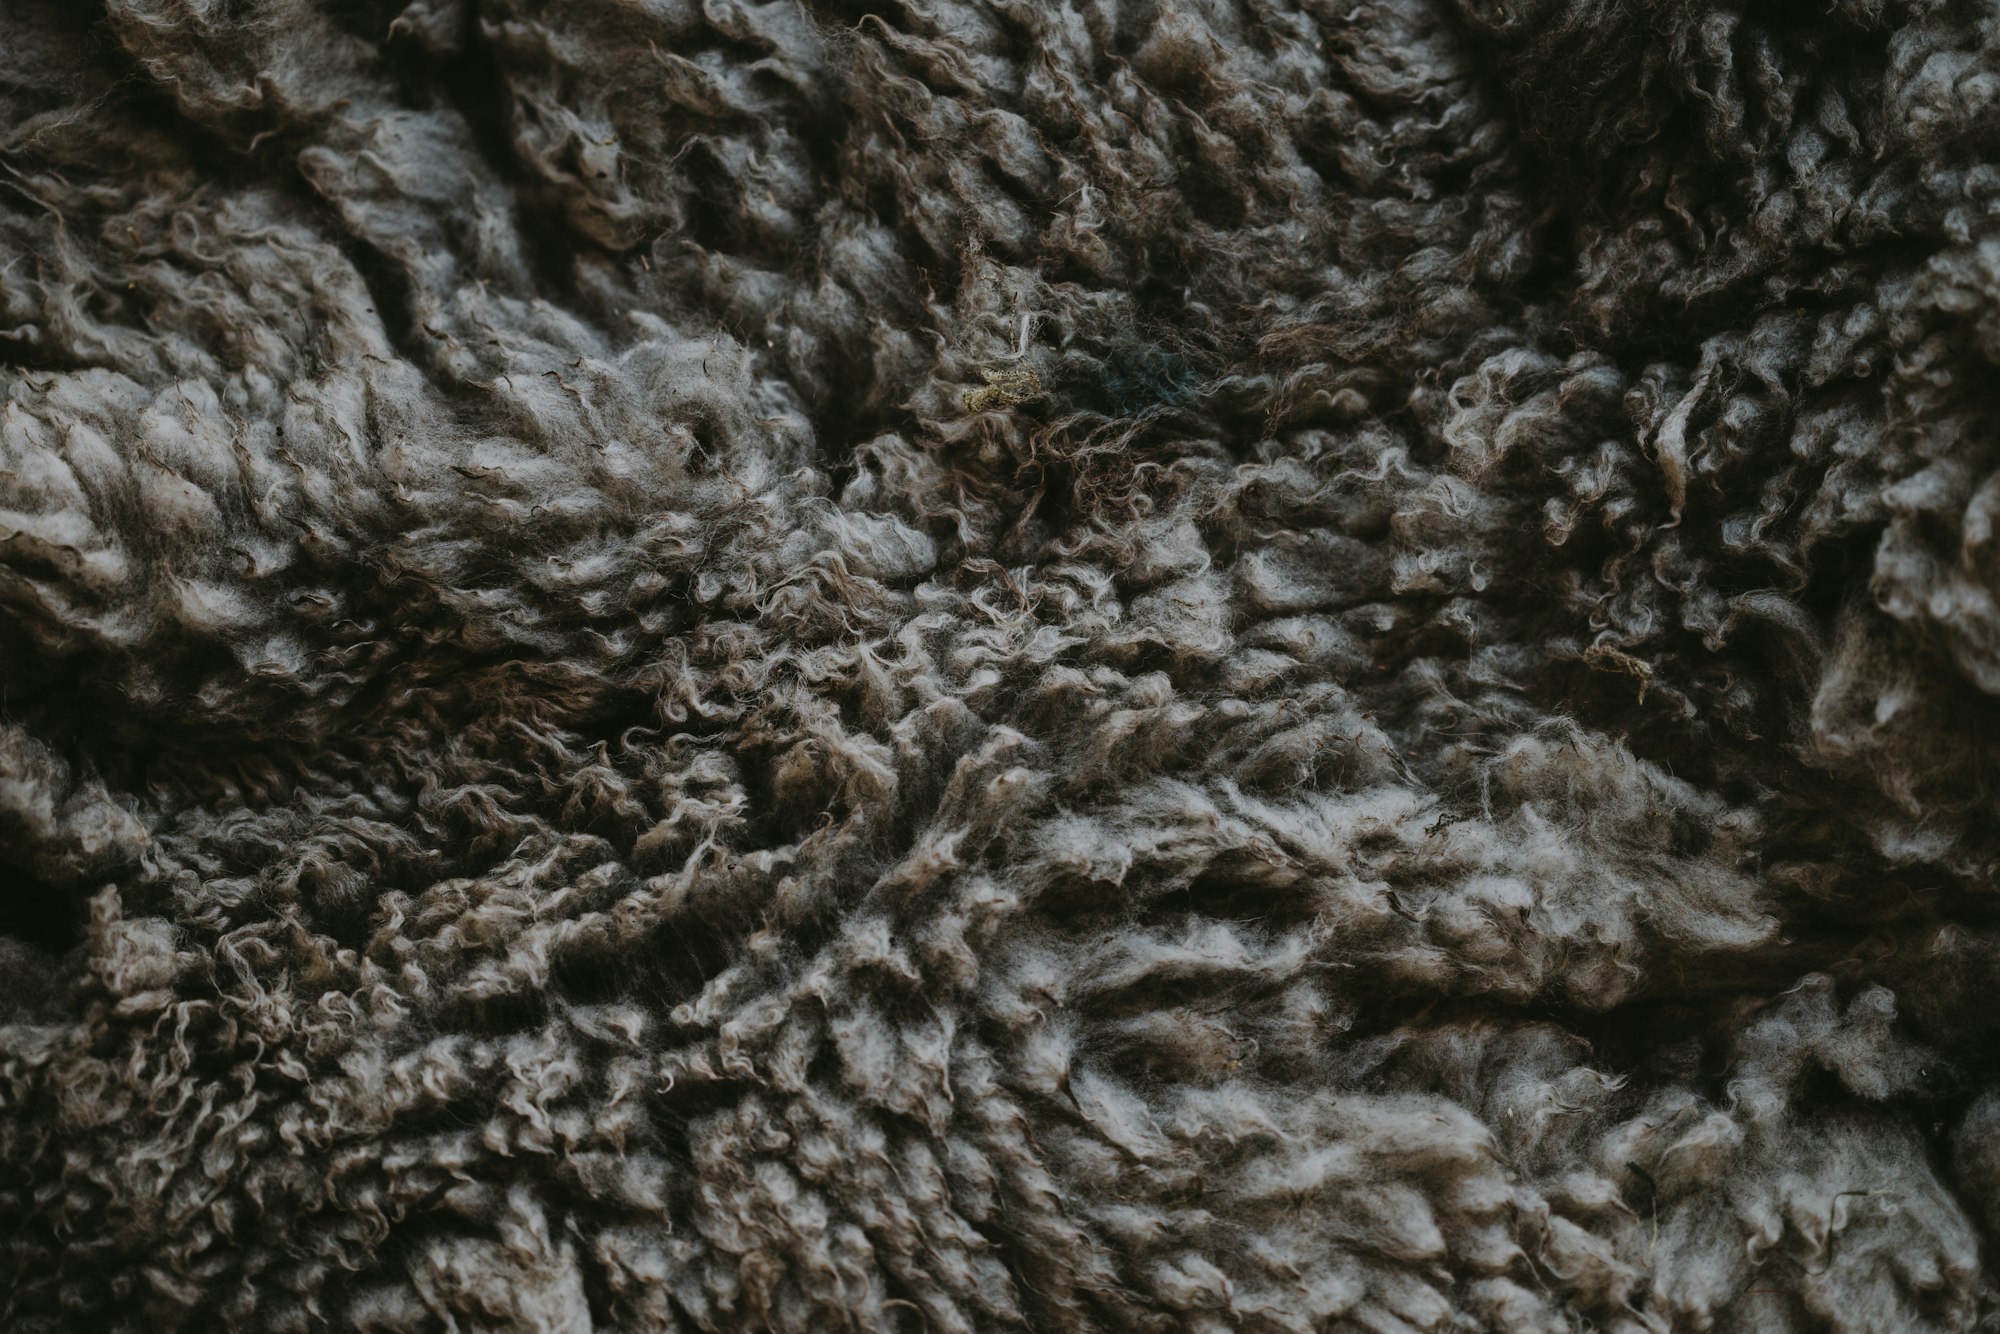 Dark sheeps fleece texture